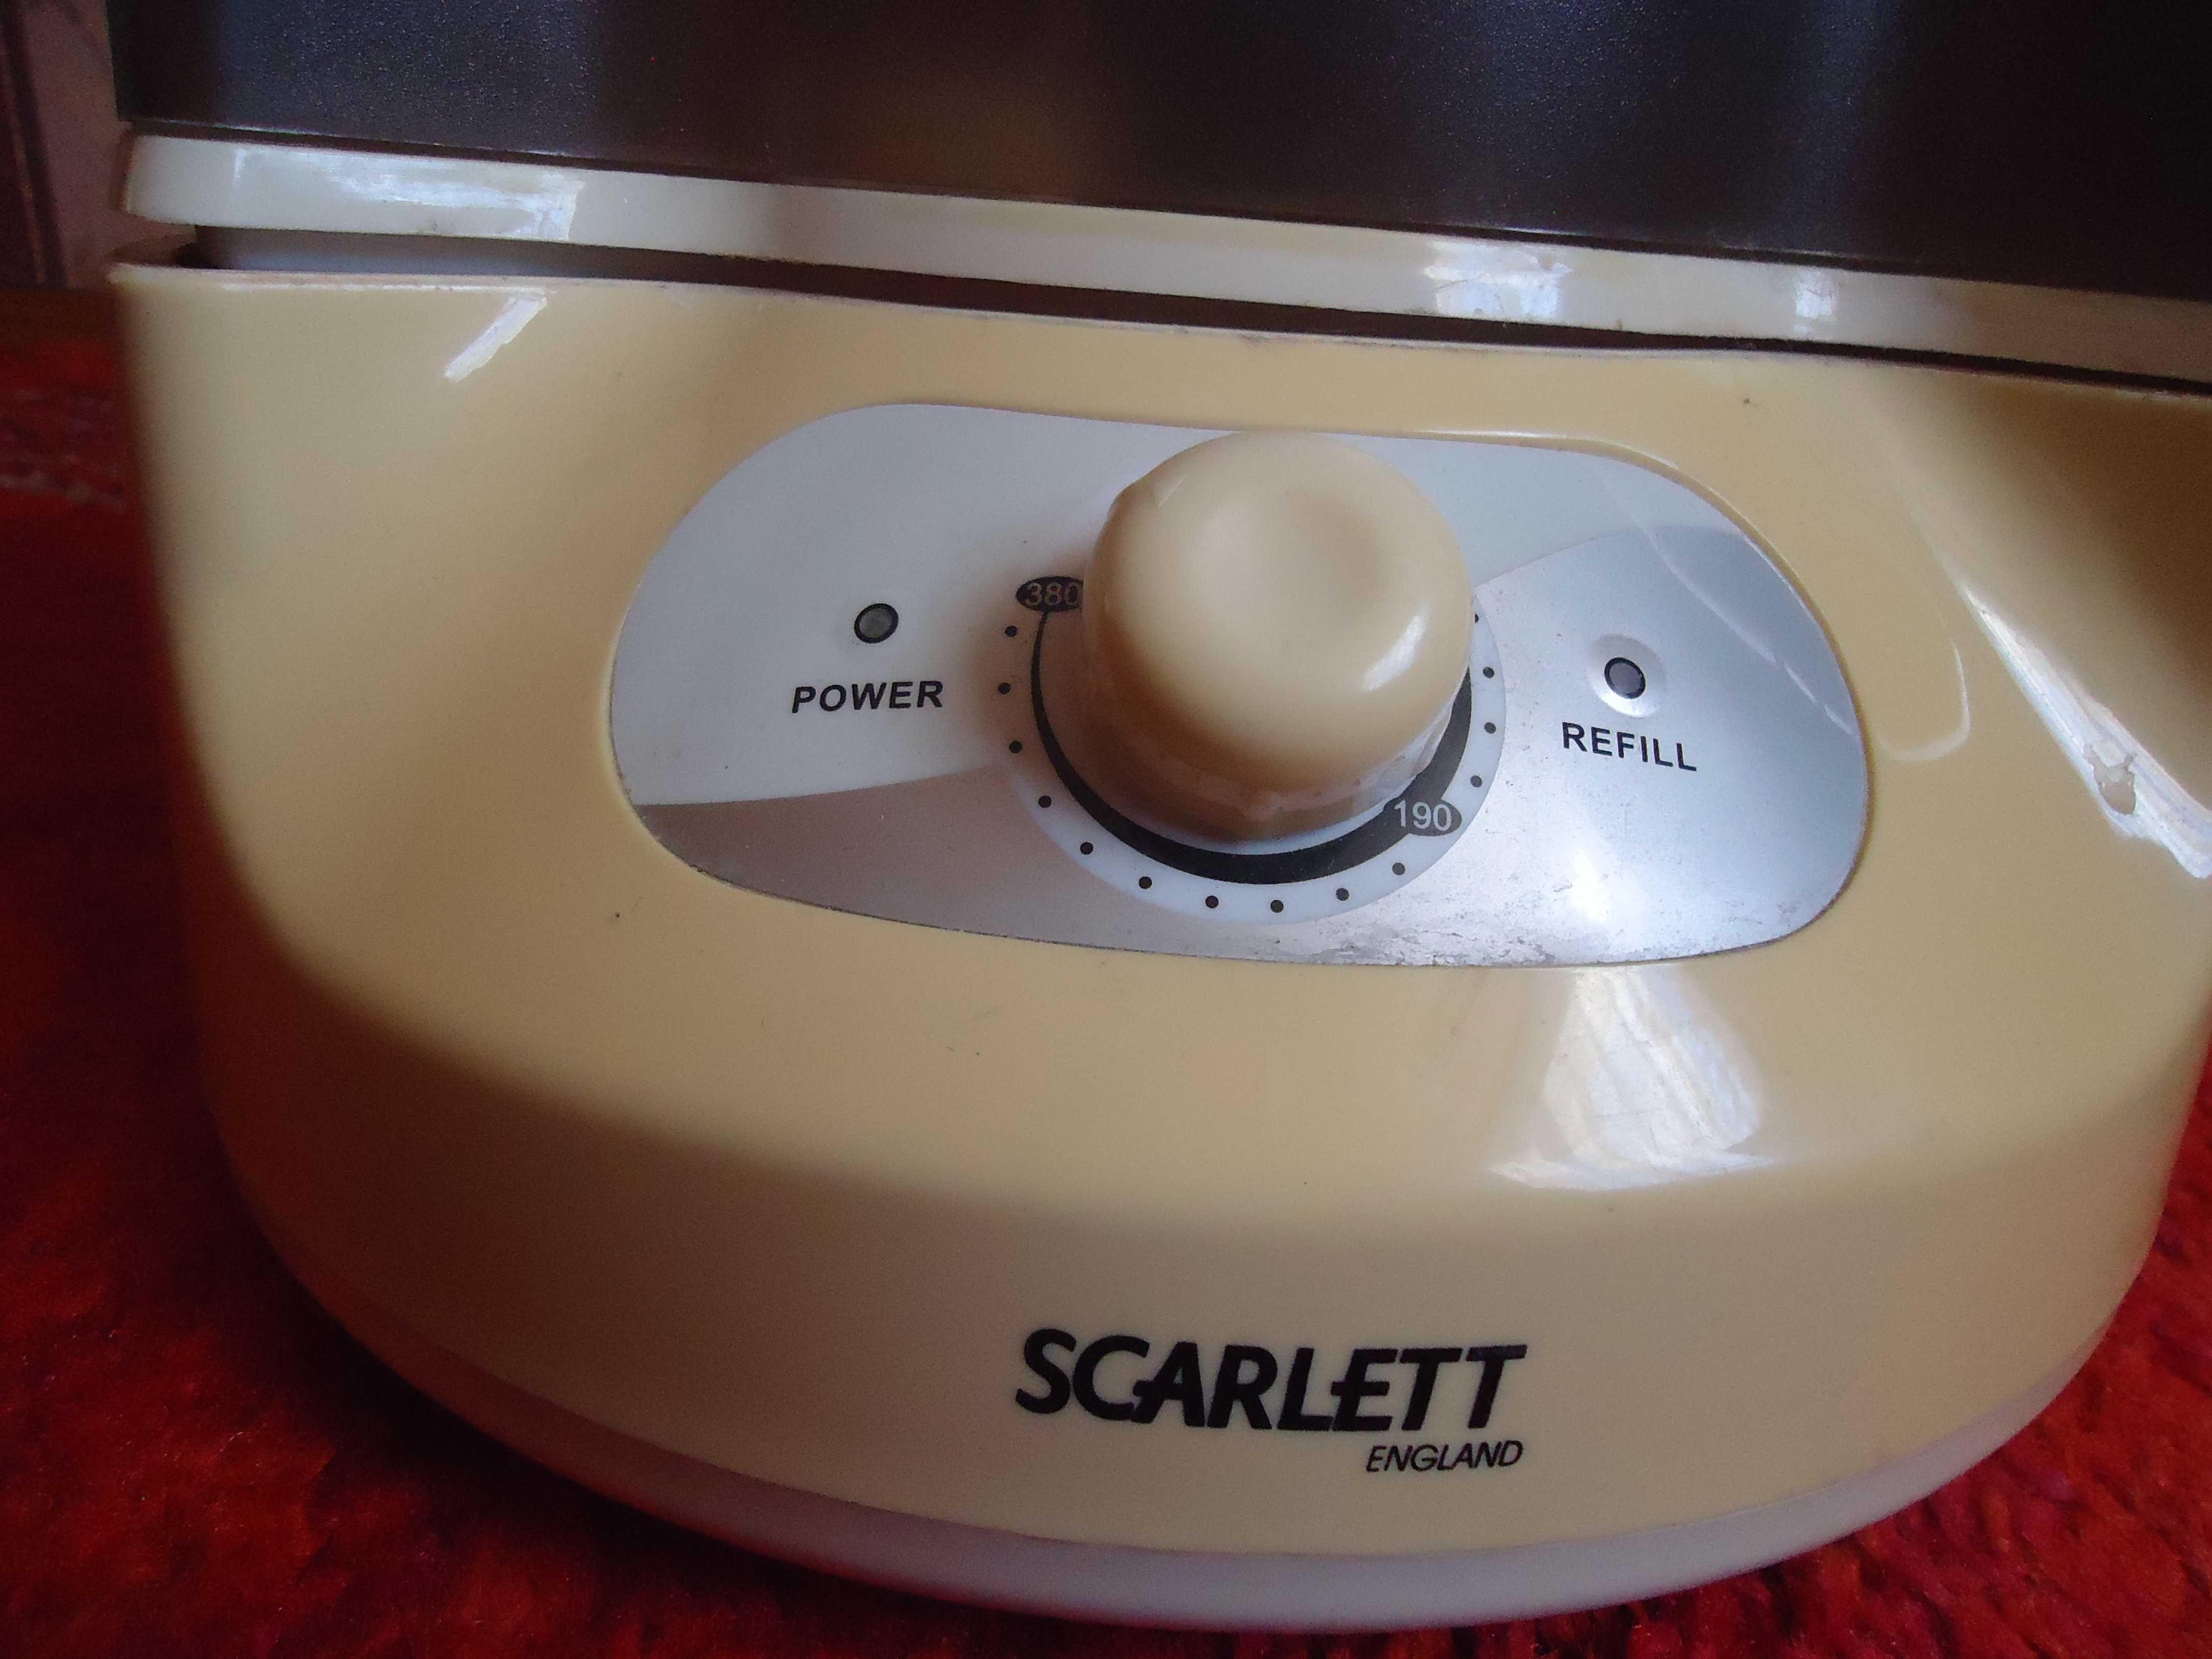 Увлажнитель воздуха, зволожувач повітря Scarlett SC-983